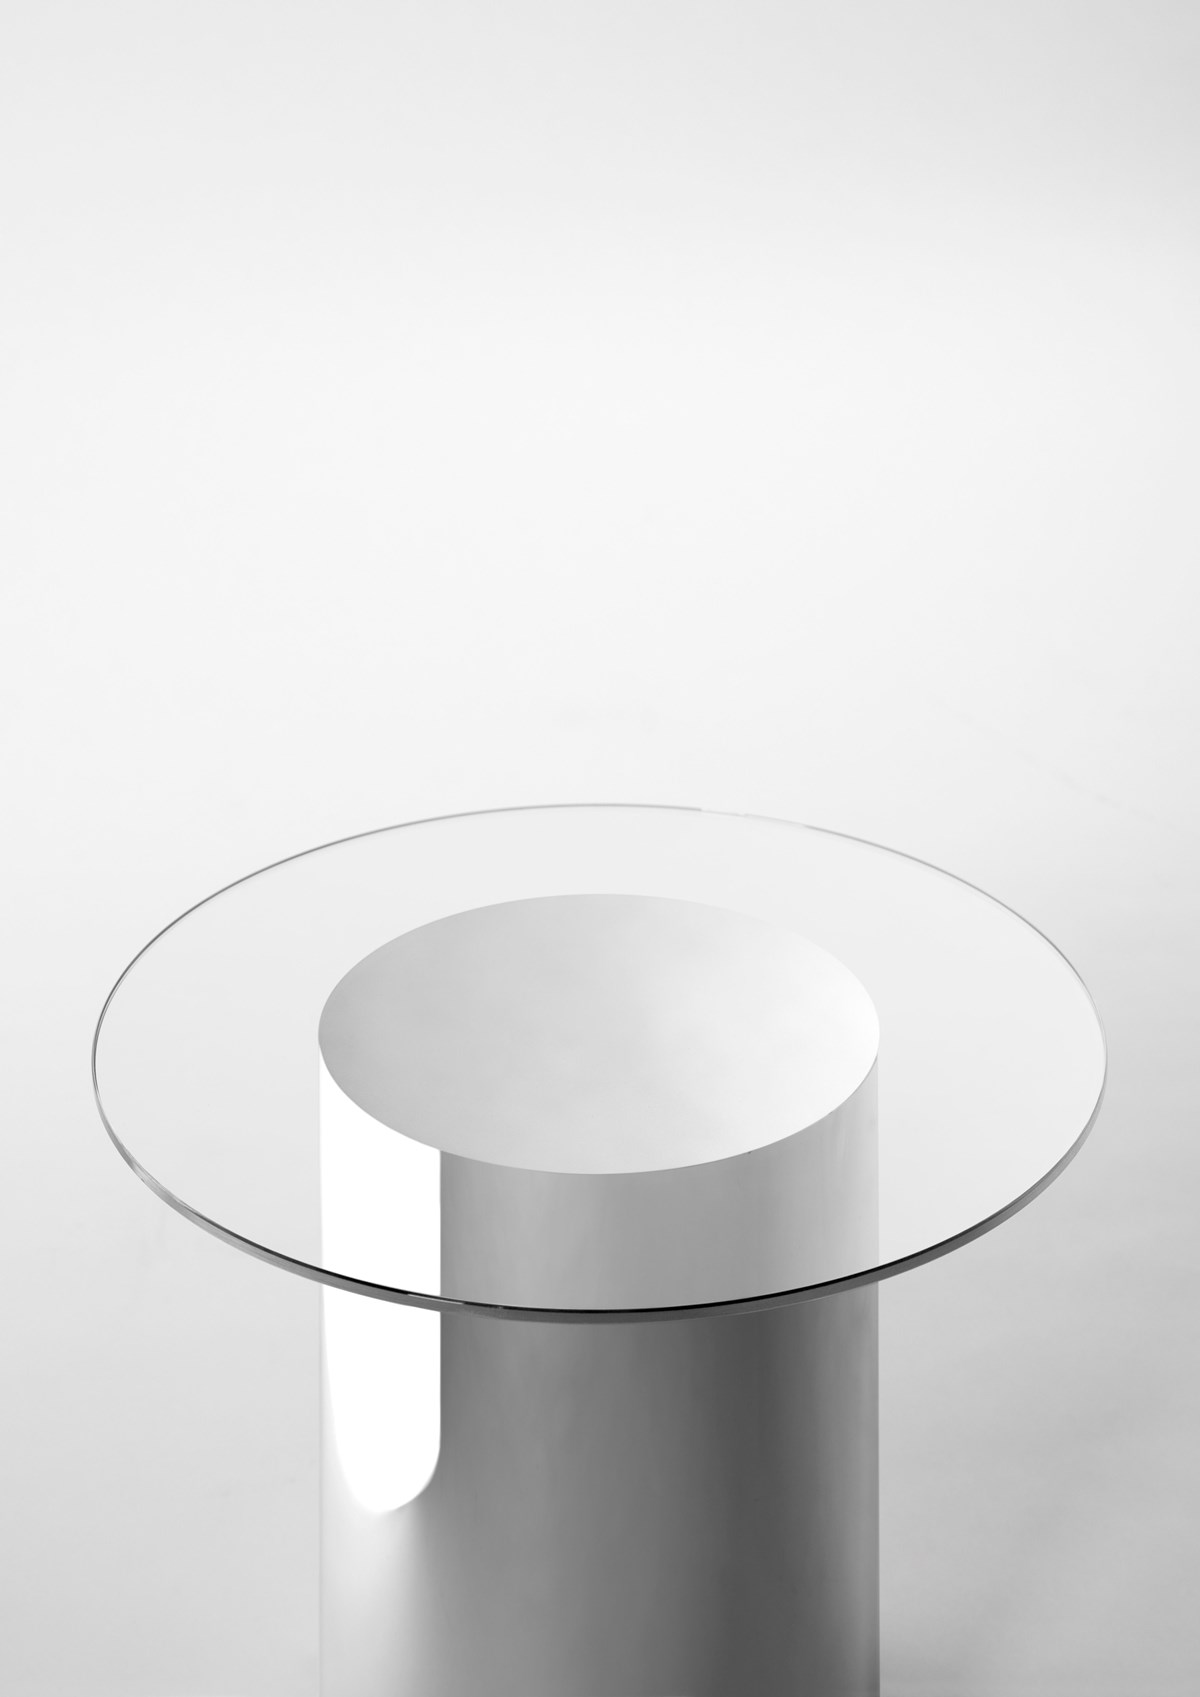 Glass Table Detalle Fondo Gris Bf4ab79f40